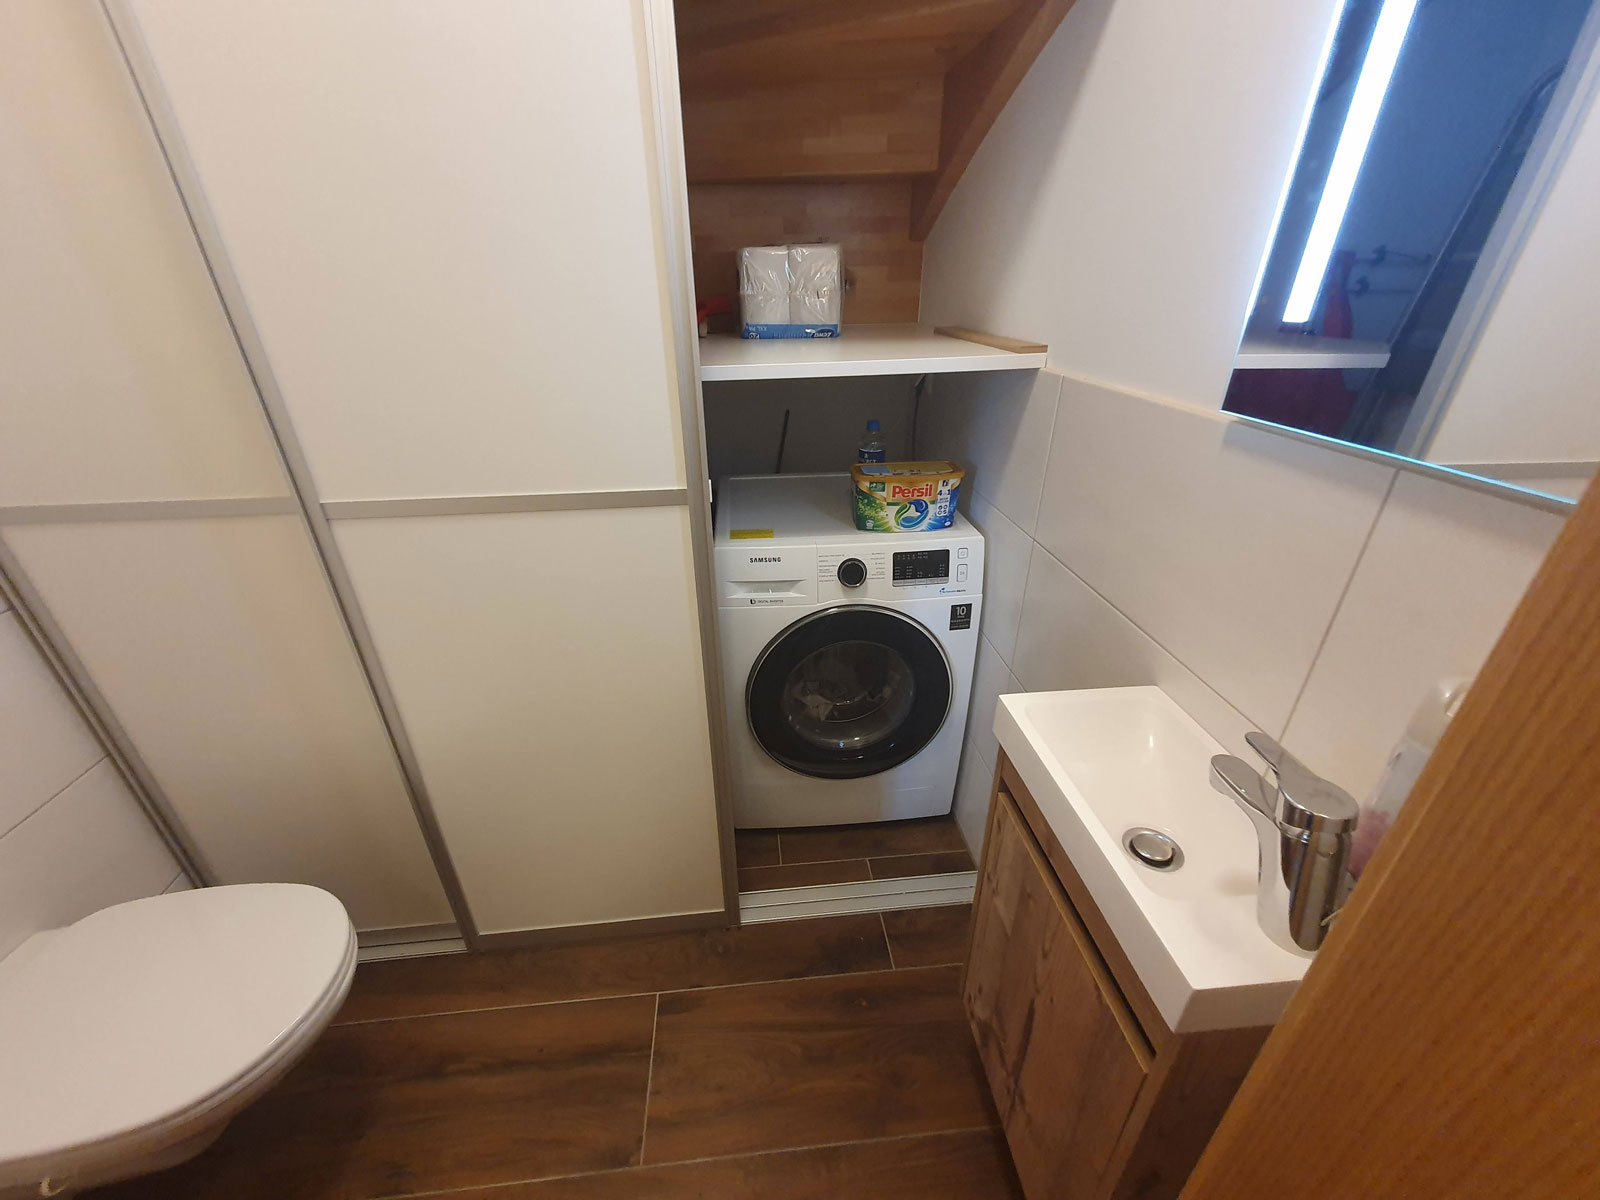 Toilet ground floor washing machine tumble dryer Berghaus Edelhirsch